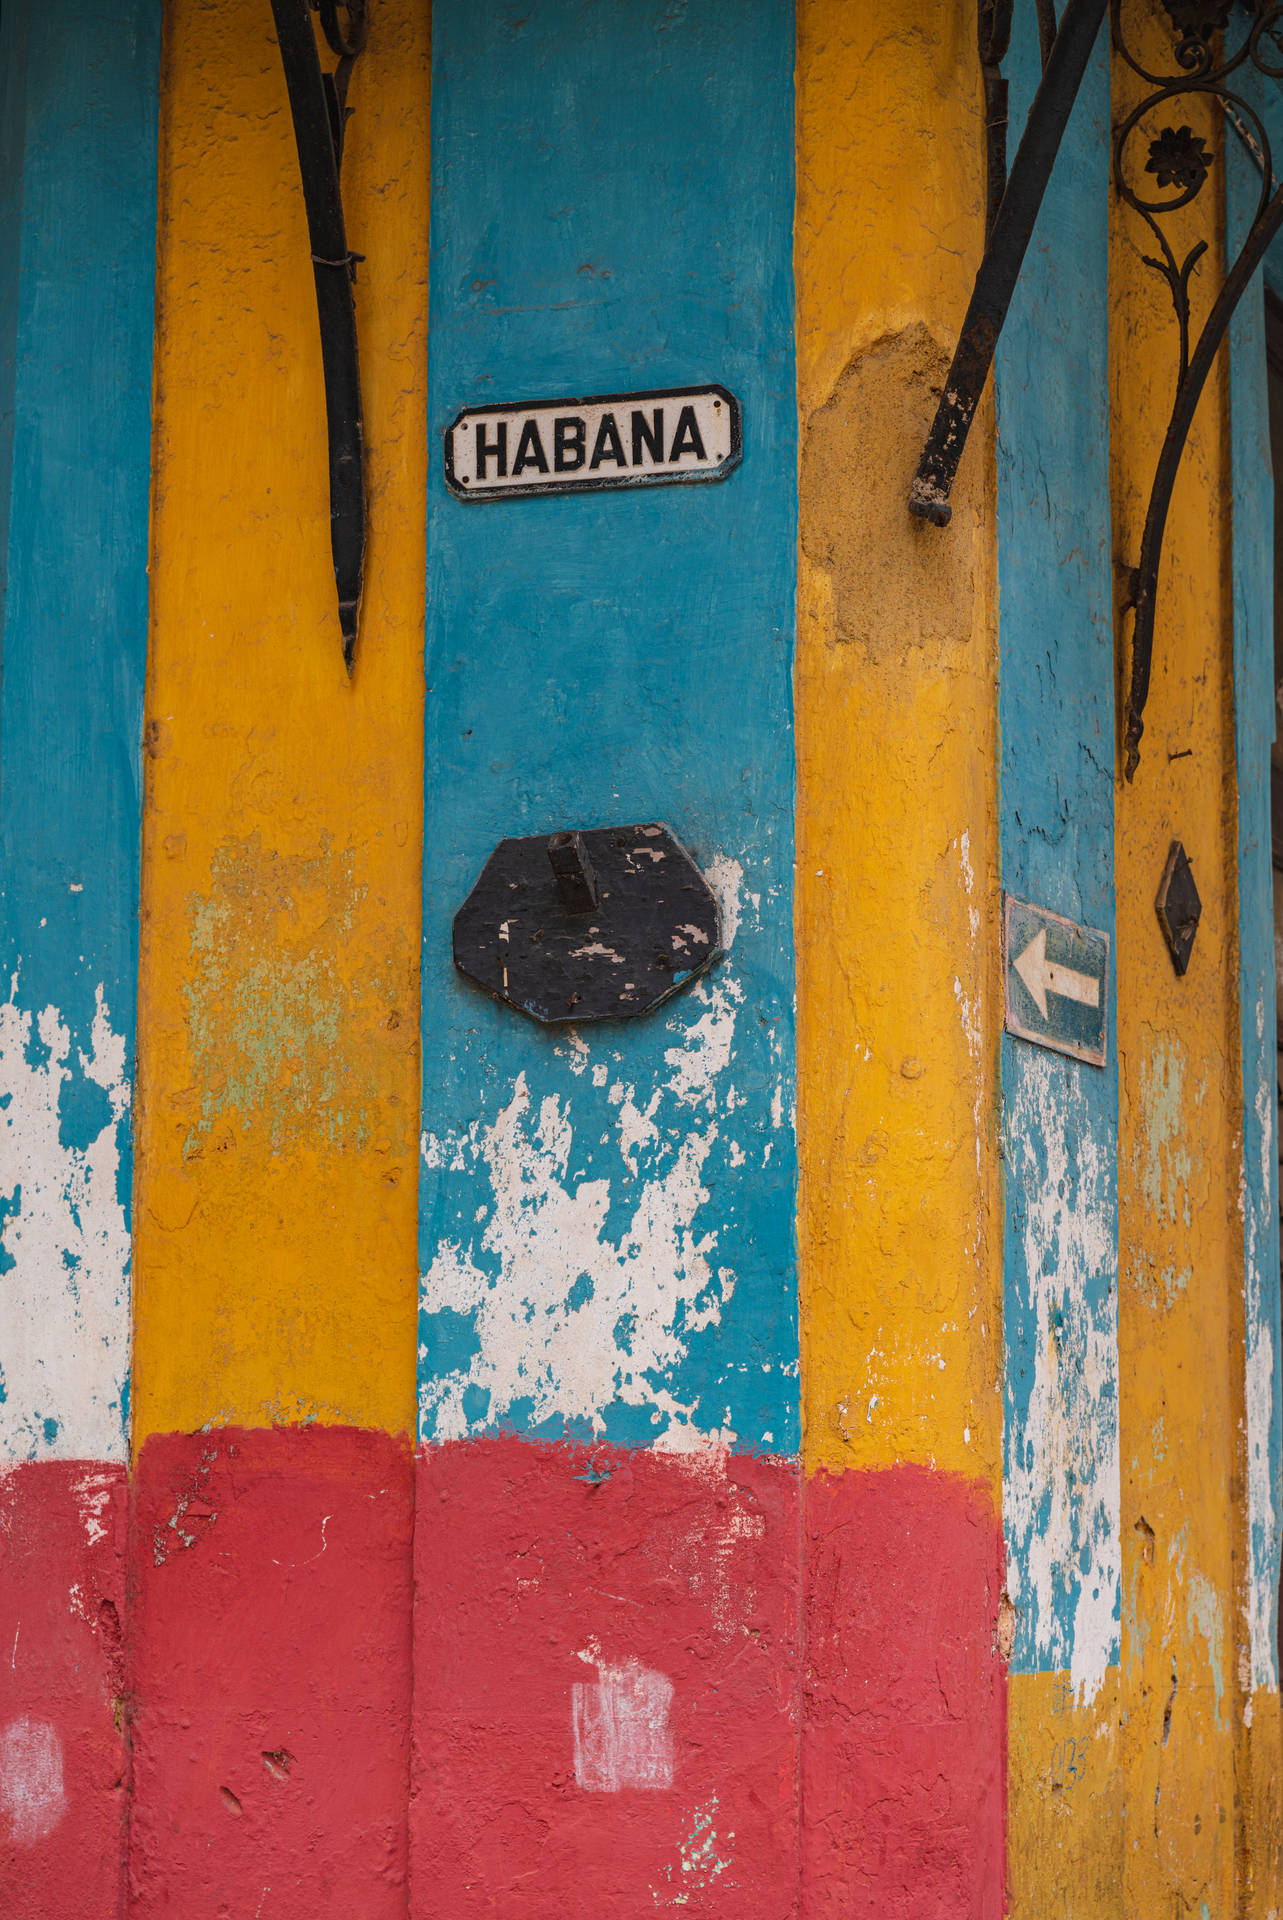 Habana Cuba Sign Wallpaper